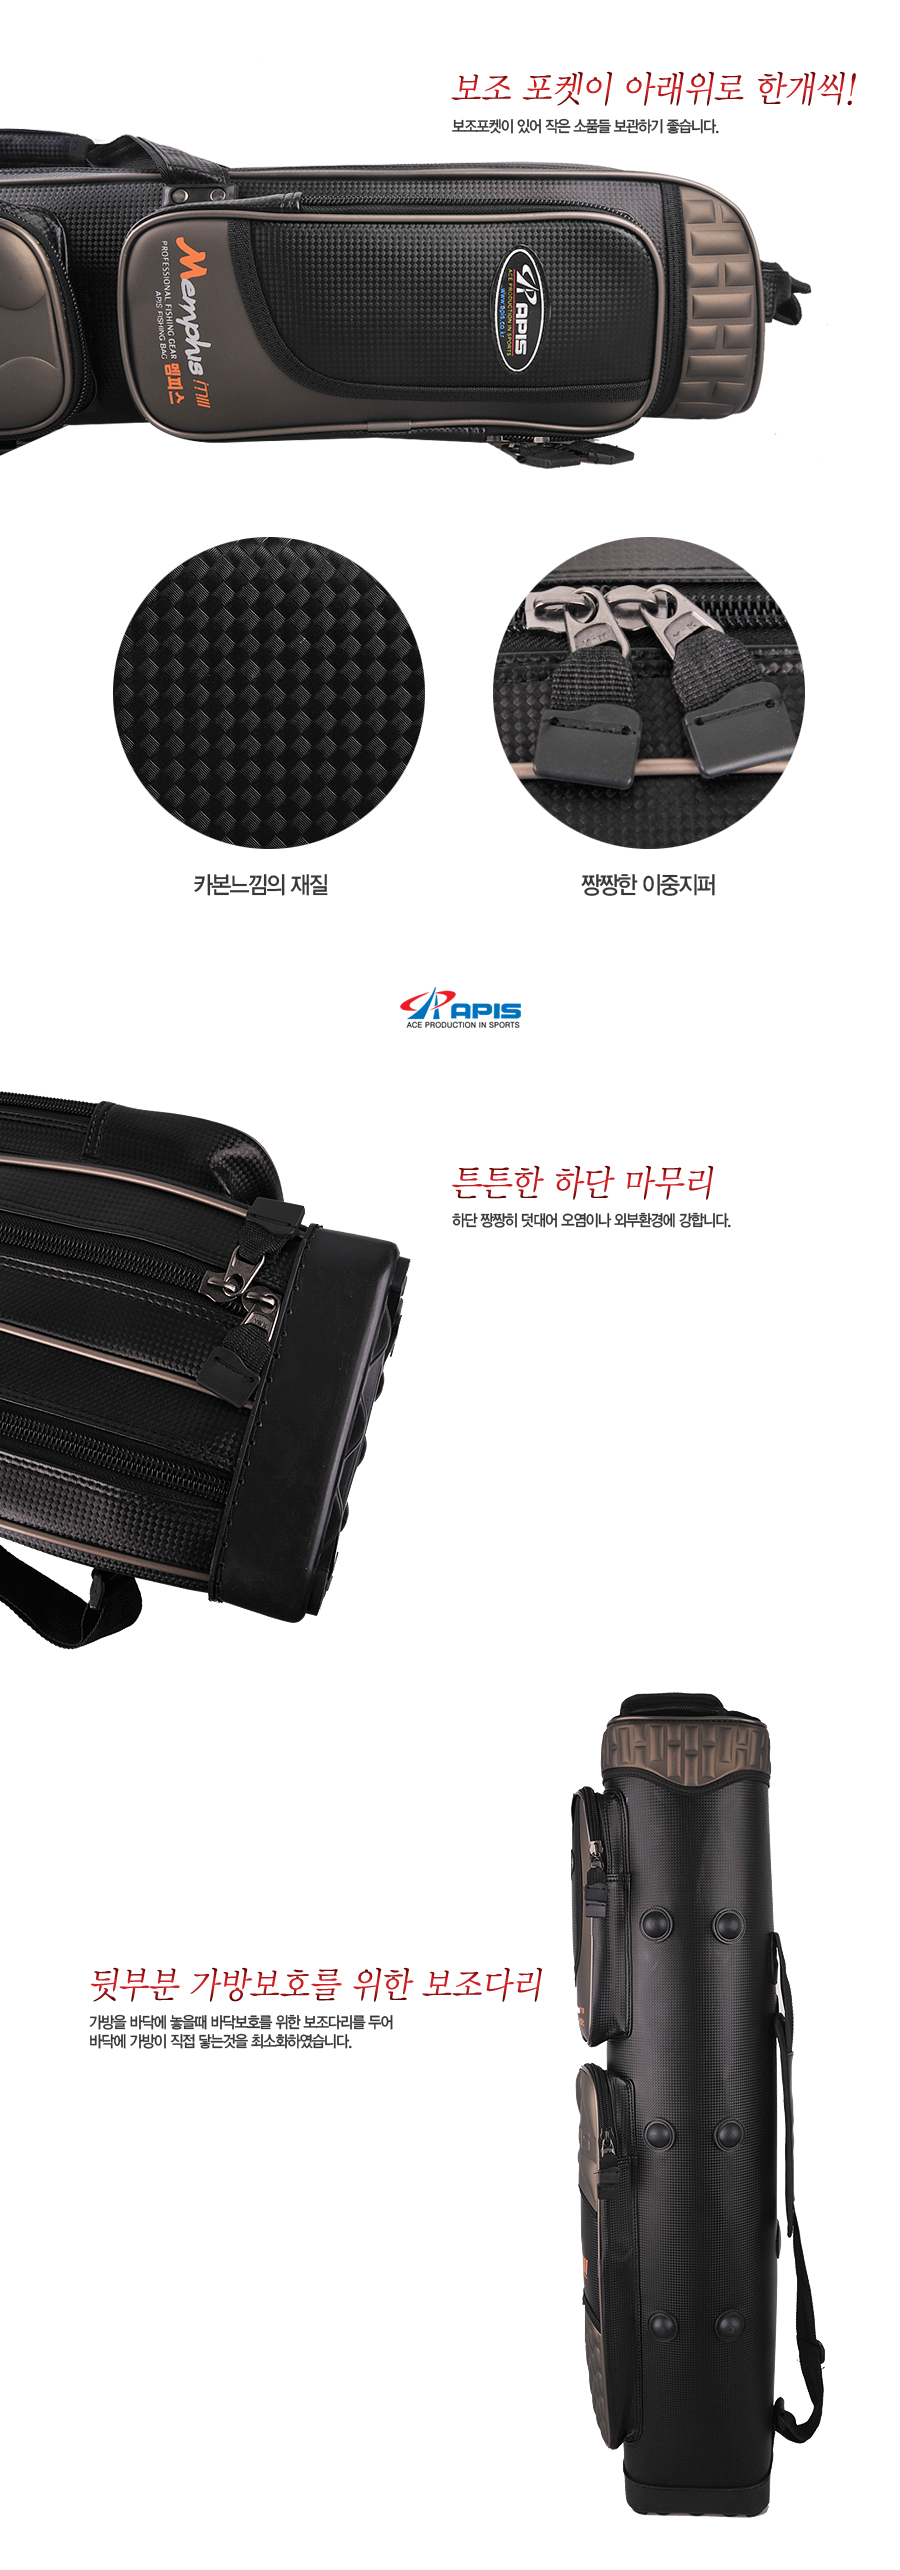 민물가방 민물낚시가방 릴낚시가방 민물릴낚시가방 민물낚시용품 낚시용품 낚시가방 장대가방 아피스로드가방 로드가방